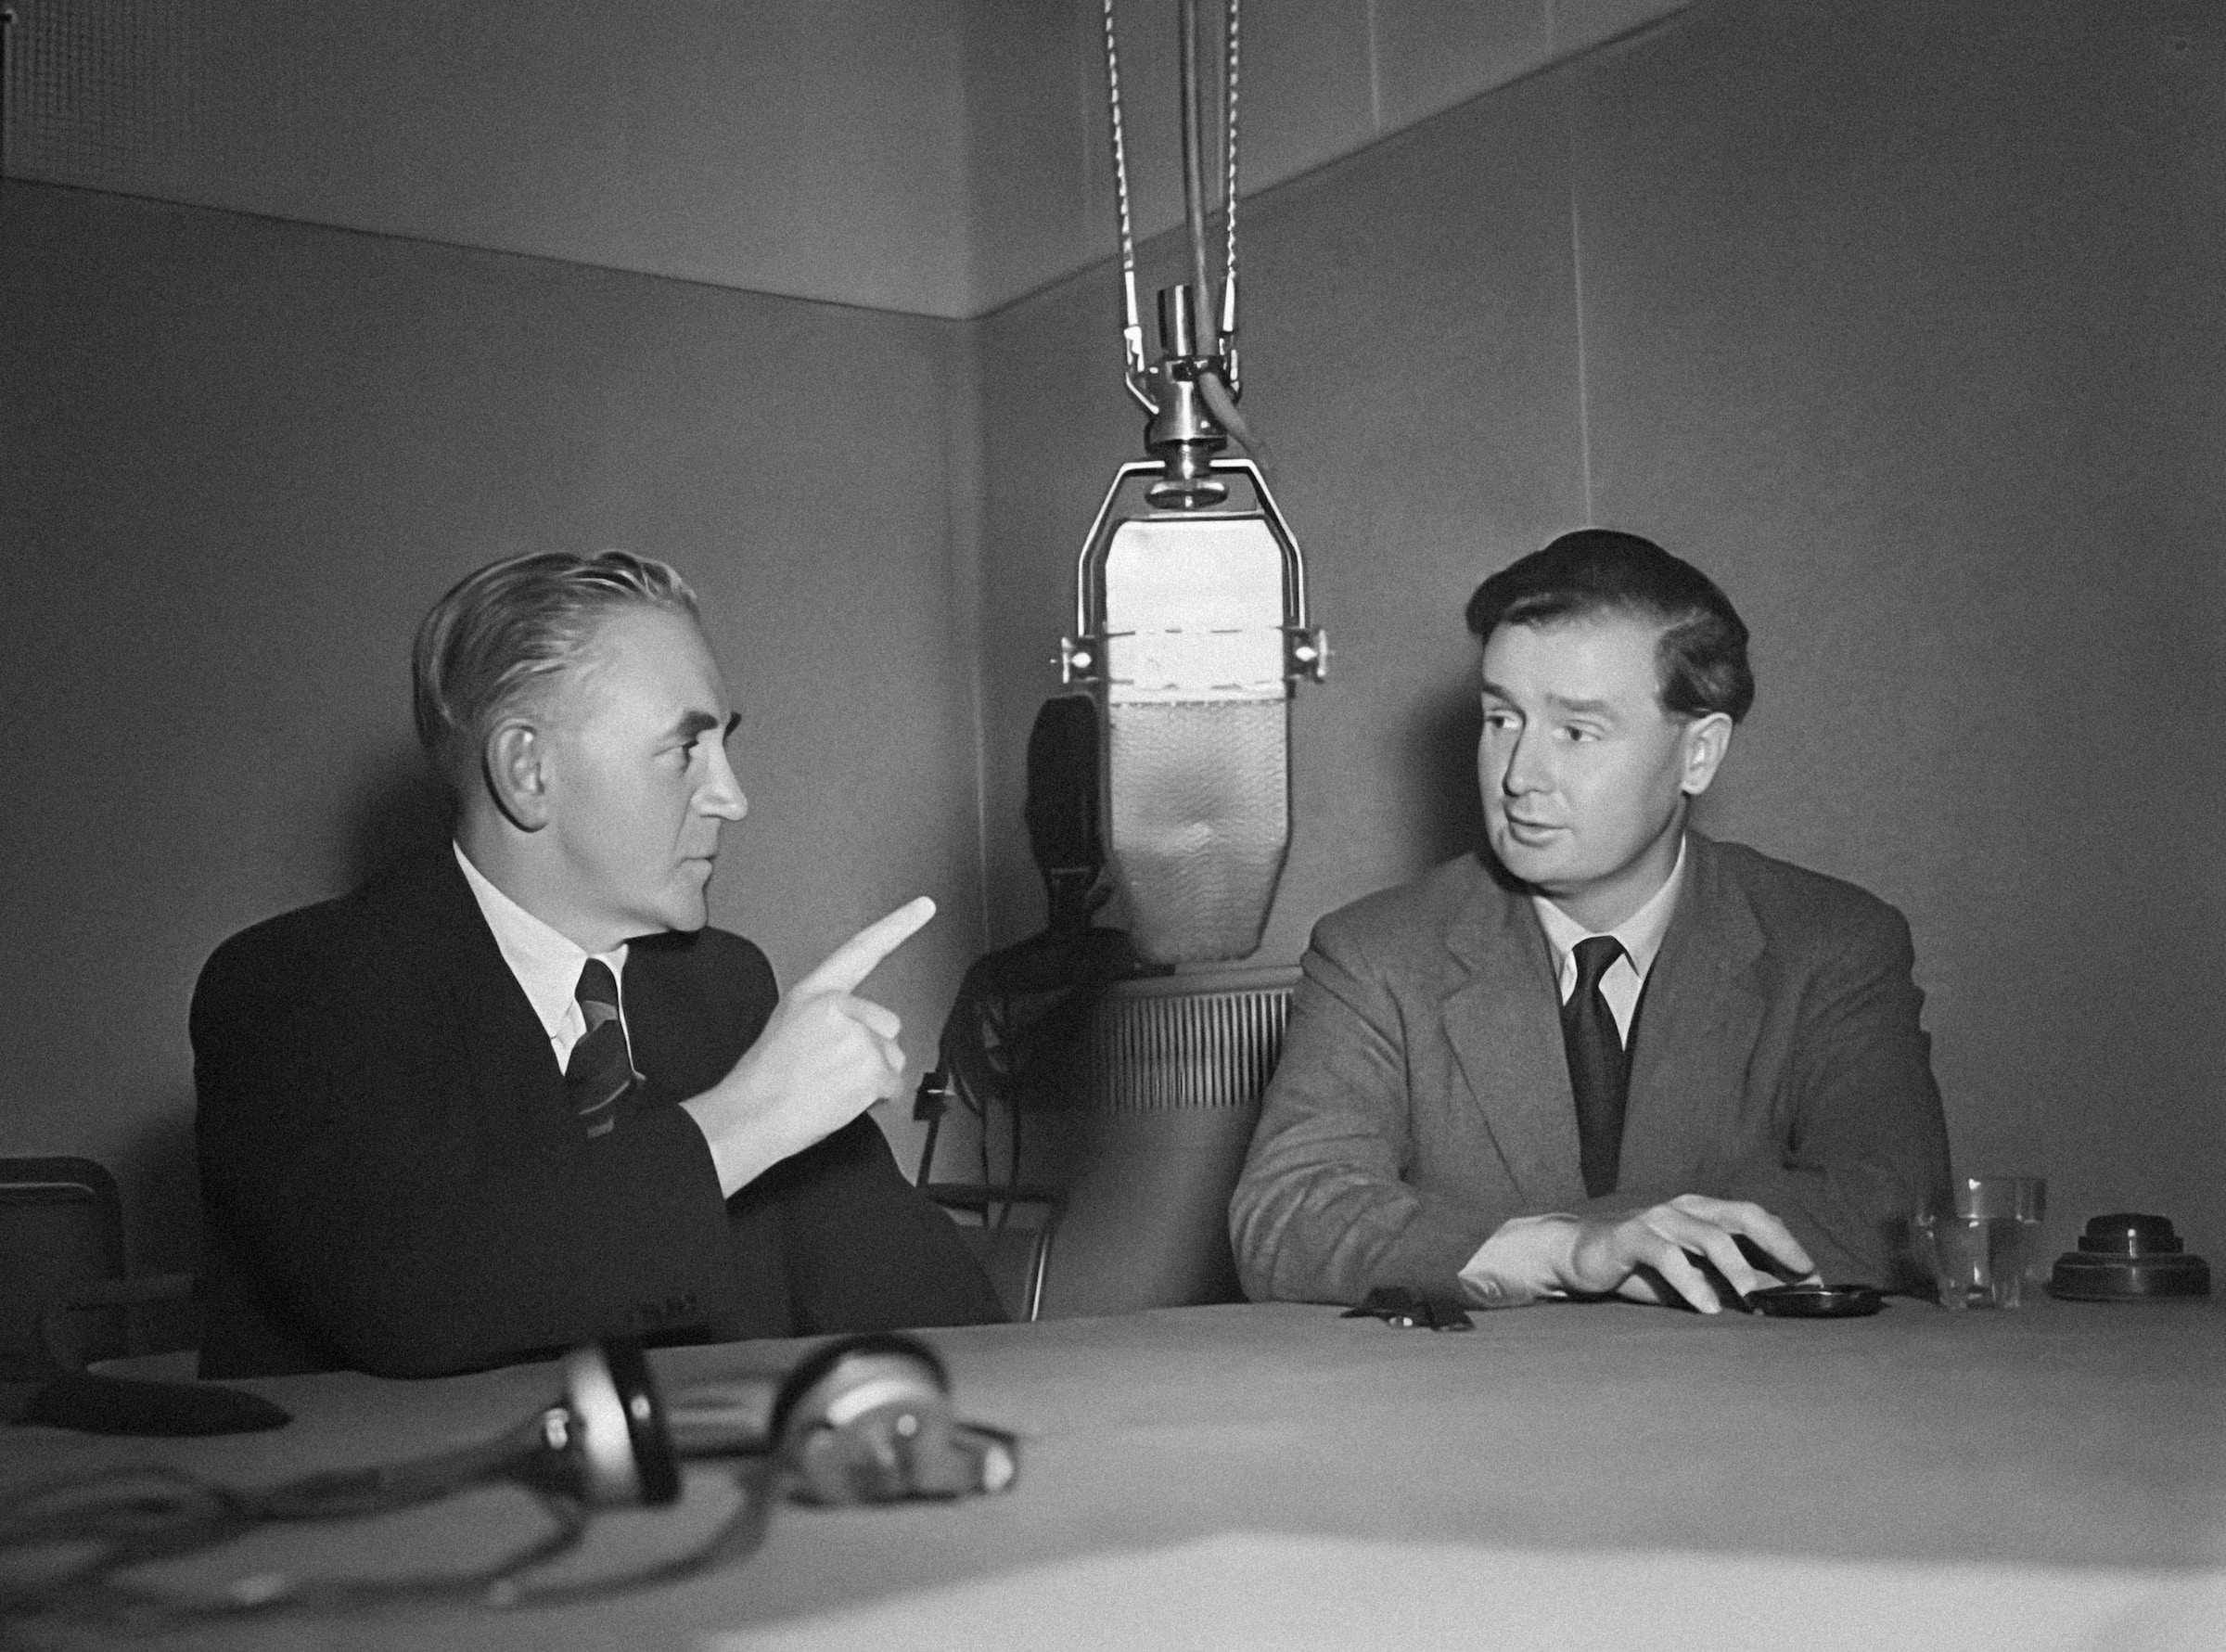 Debata między dwoma ludźmi, rozmowa w radio